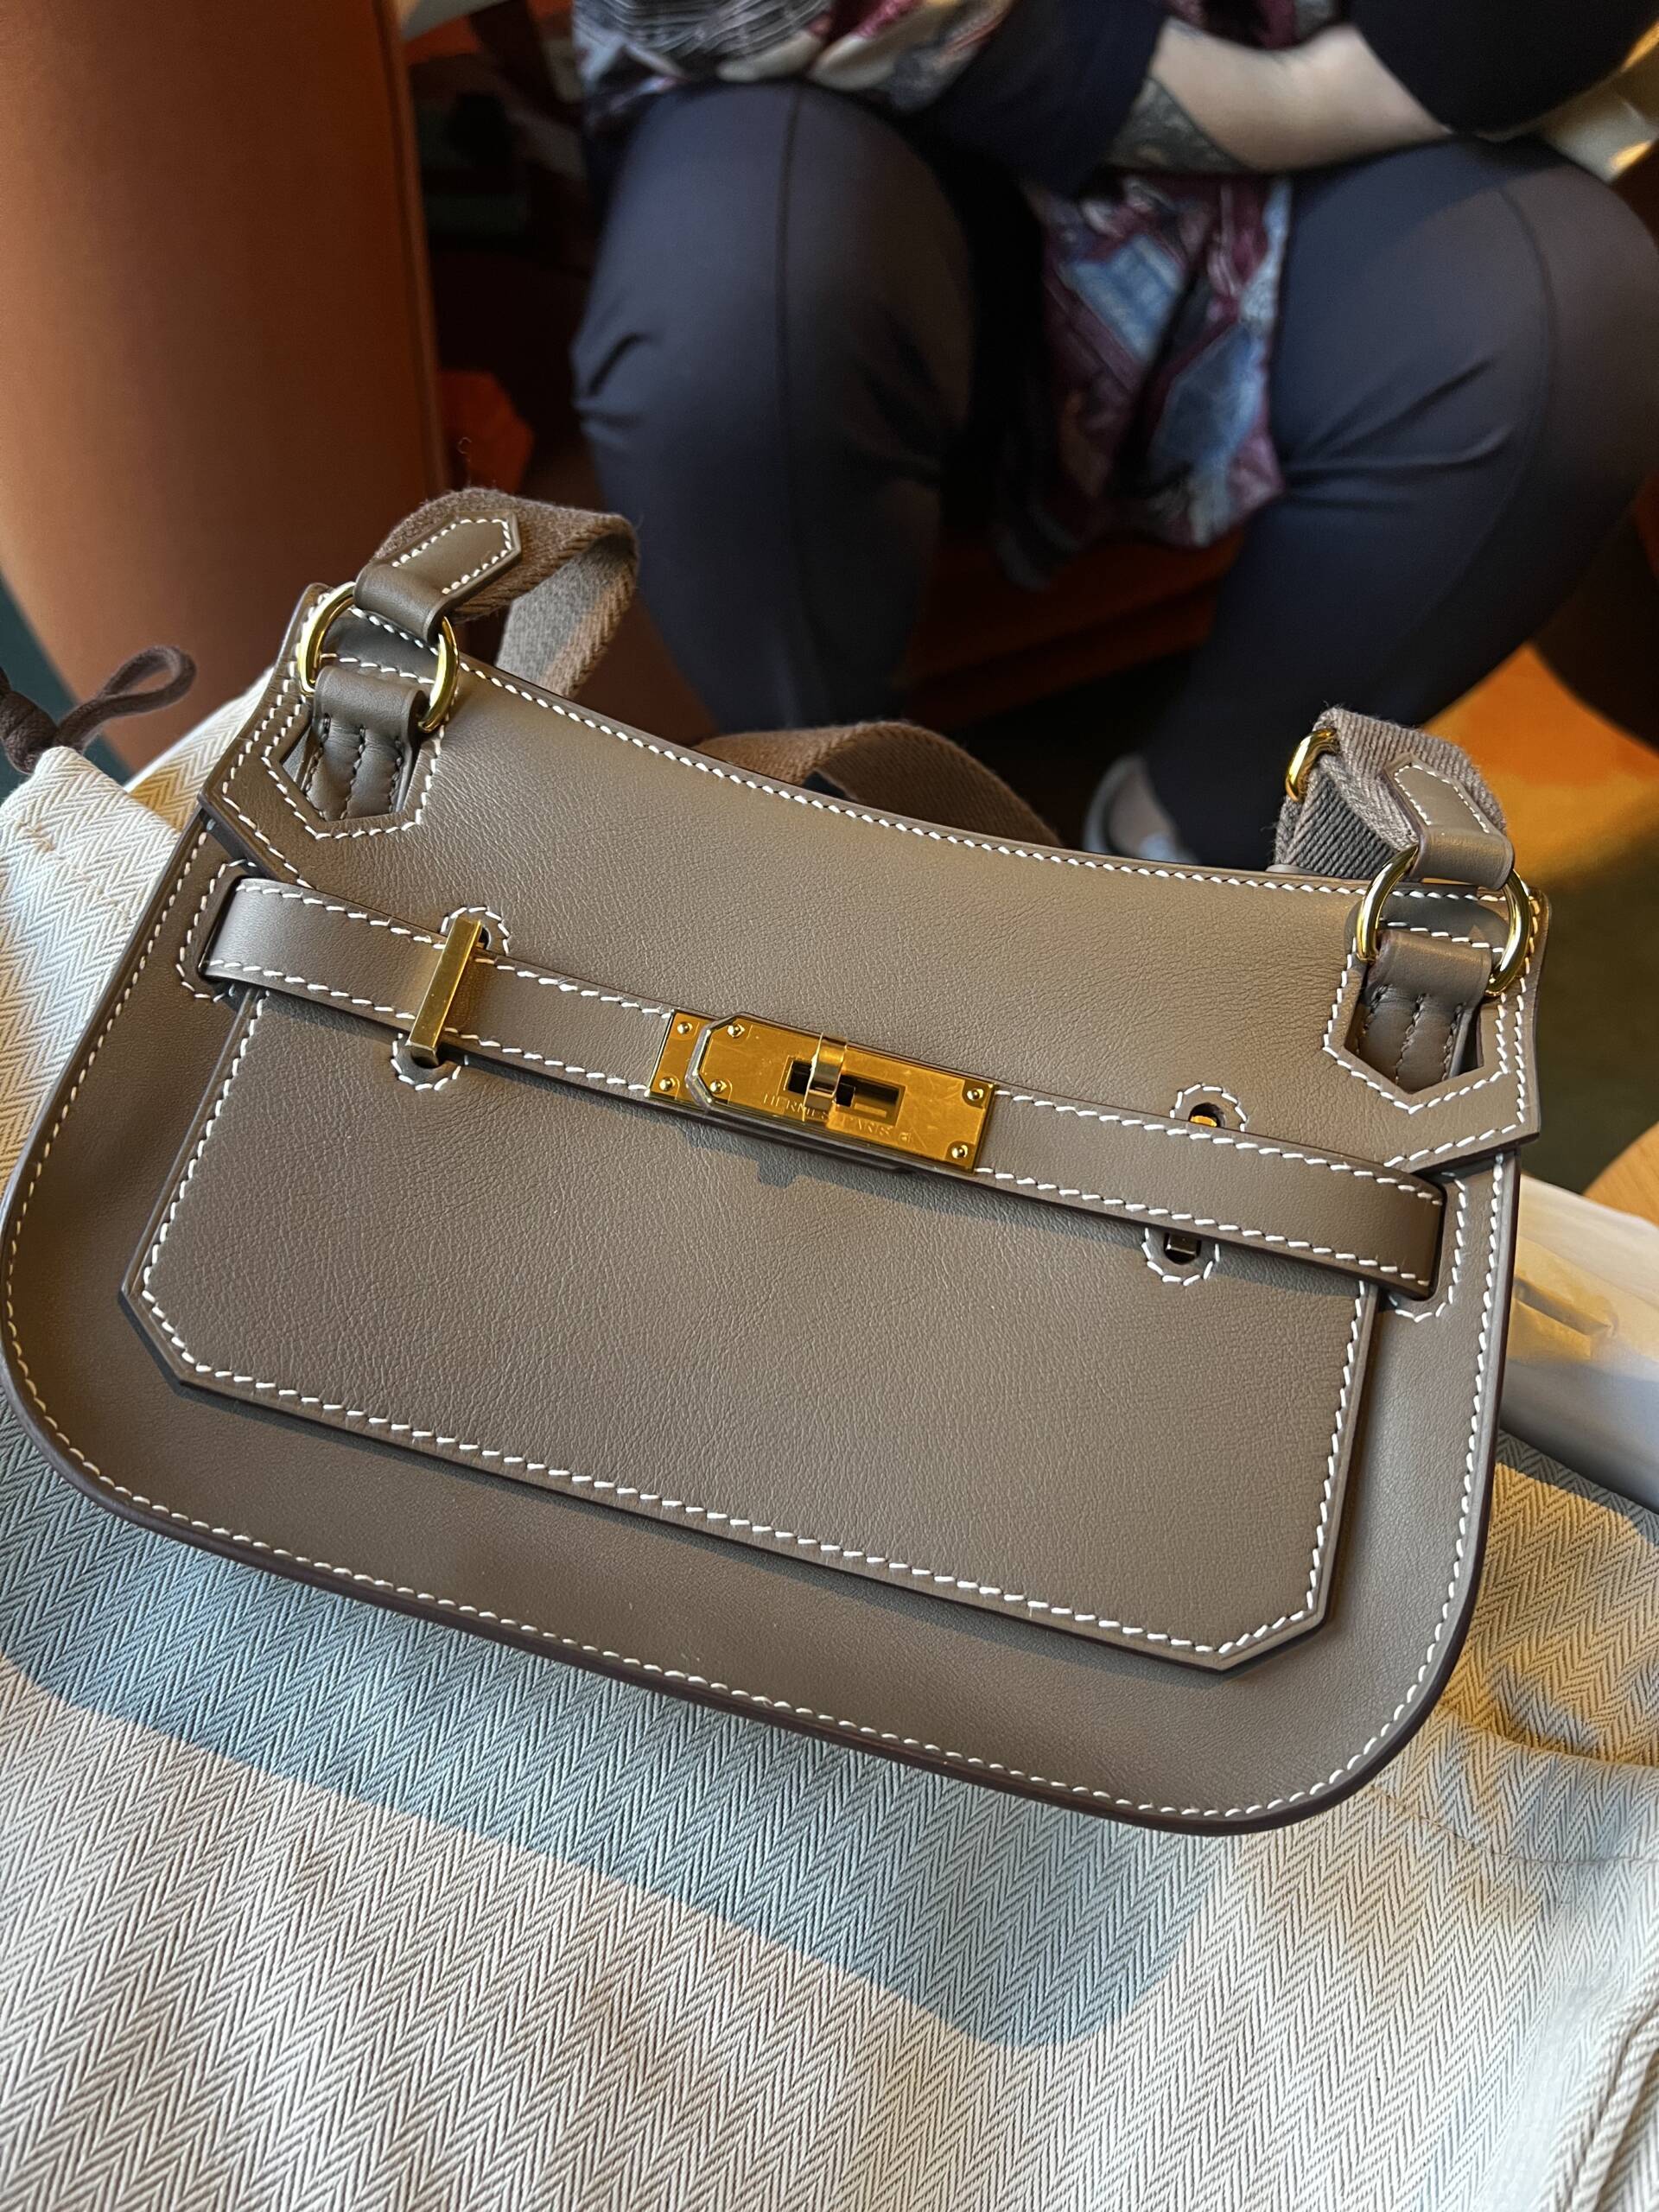 Hermes Etoupe Mini Kelly 20cm Epsom Gold Hardware Shoulder Bag New in Box